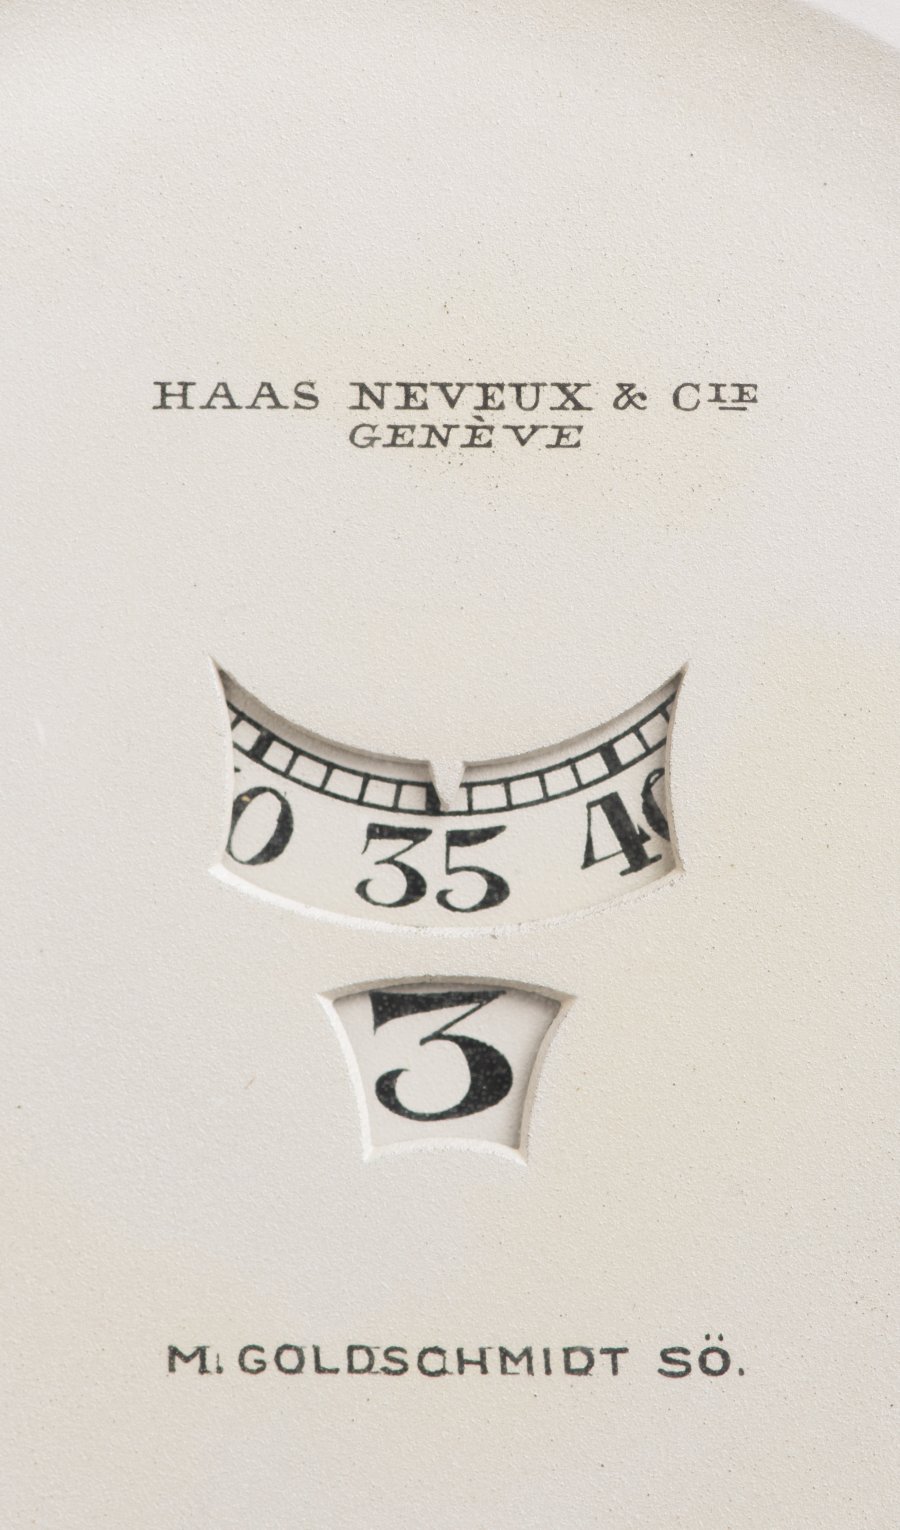 An Art Deco Haas Neveux & Cie Genève Men's Pocketwatch 